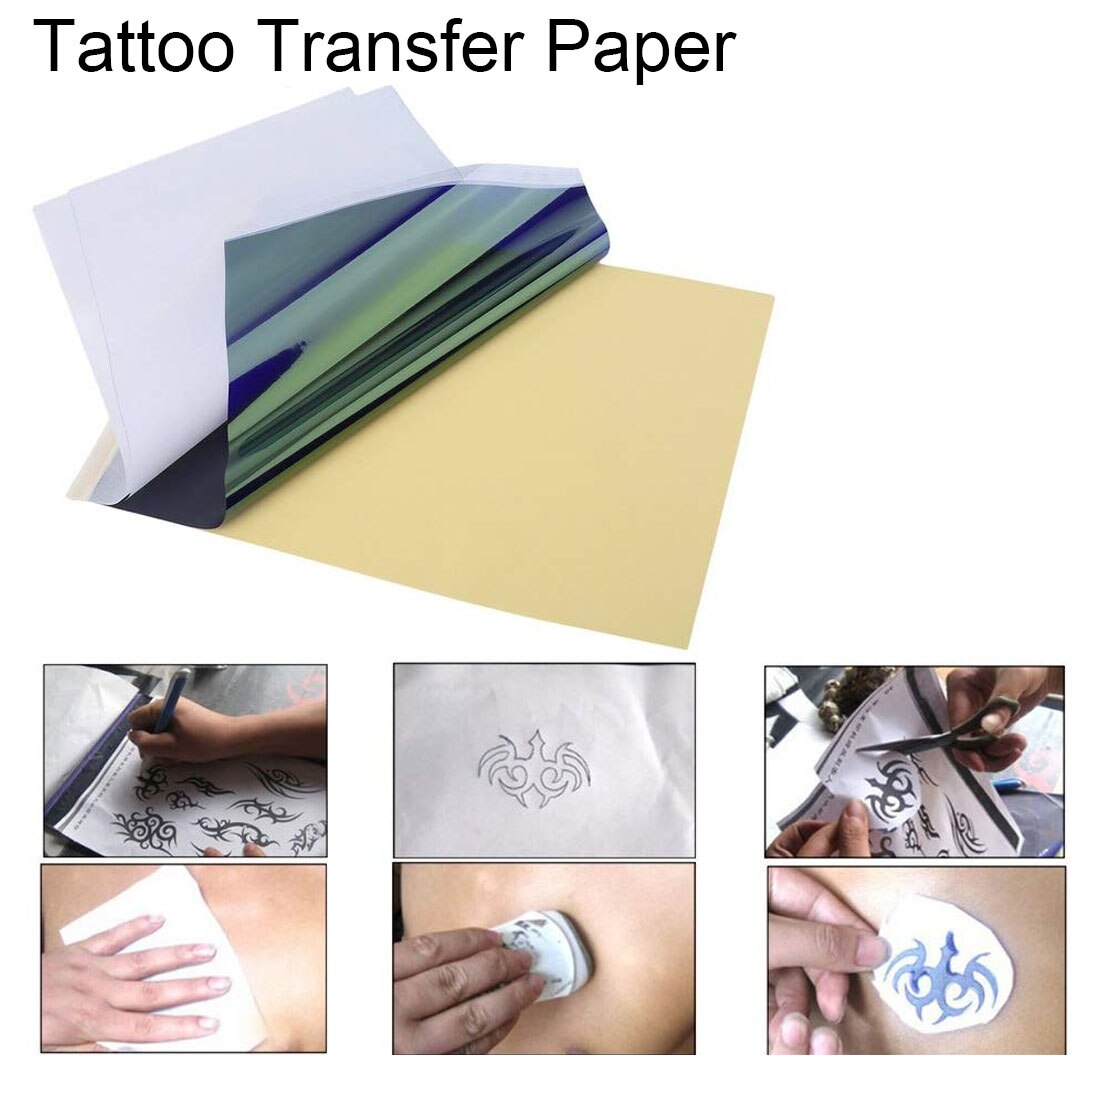 Как сделать переводную татуировку в домашних условиях на бумаге